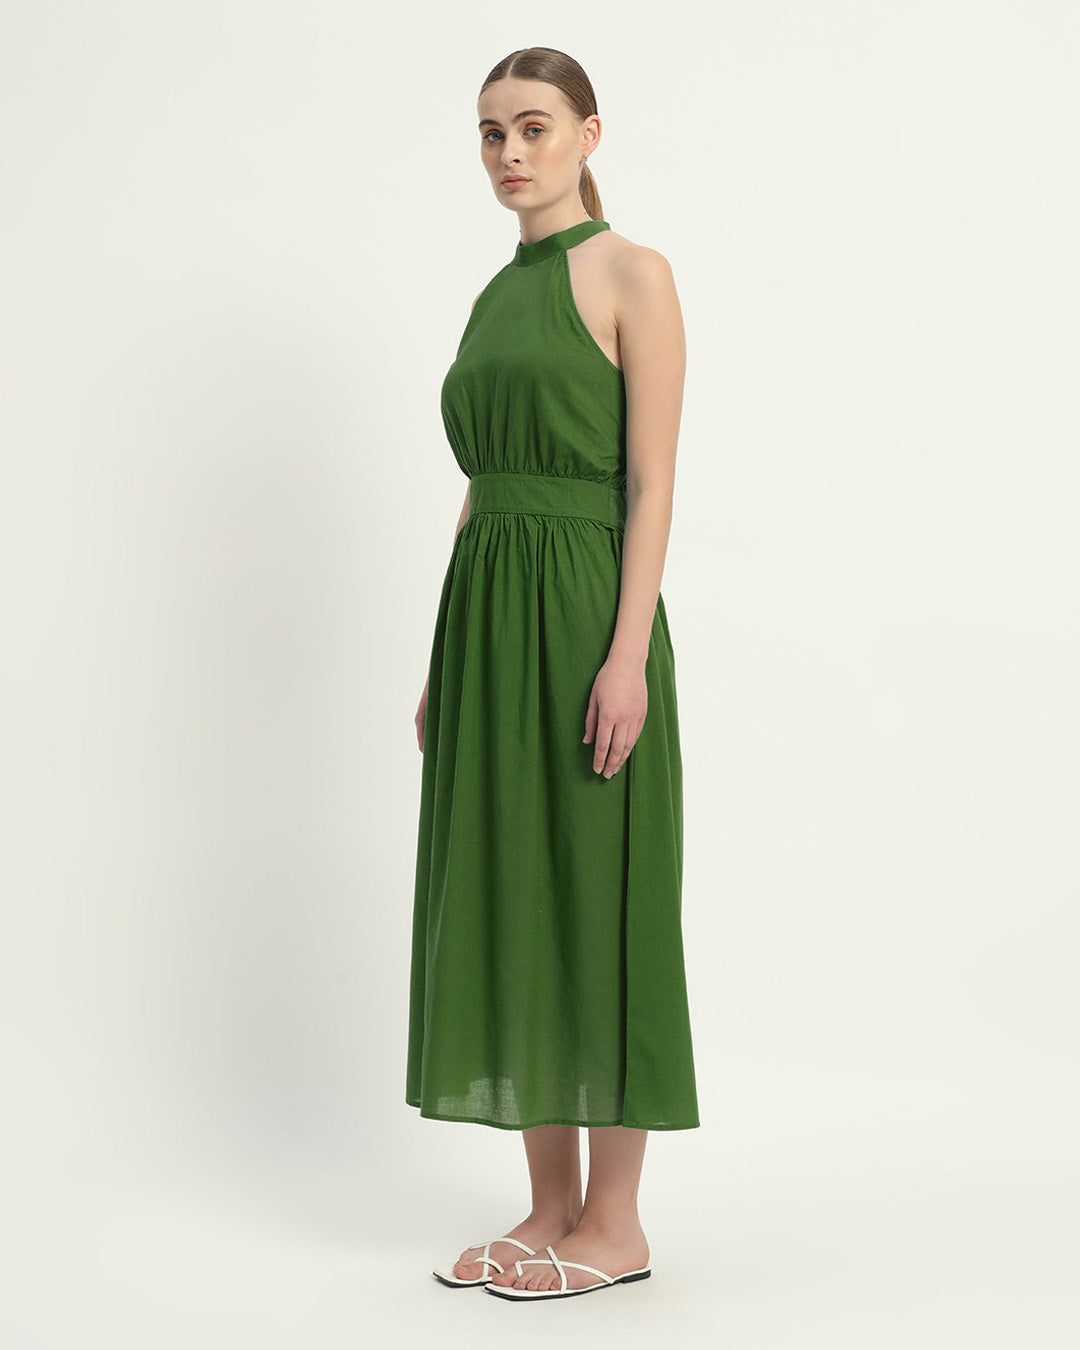 The Massena Emerald Cotton Dress